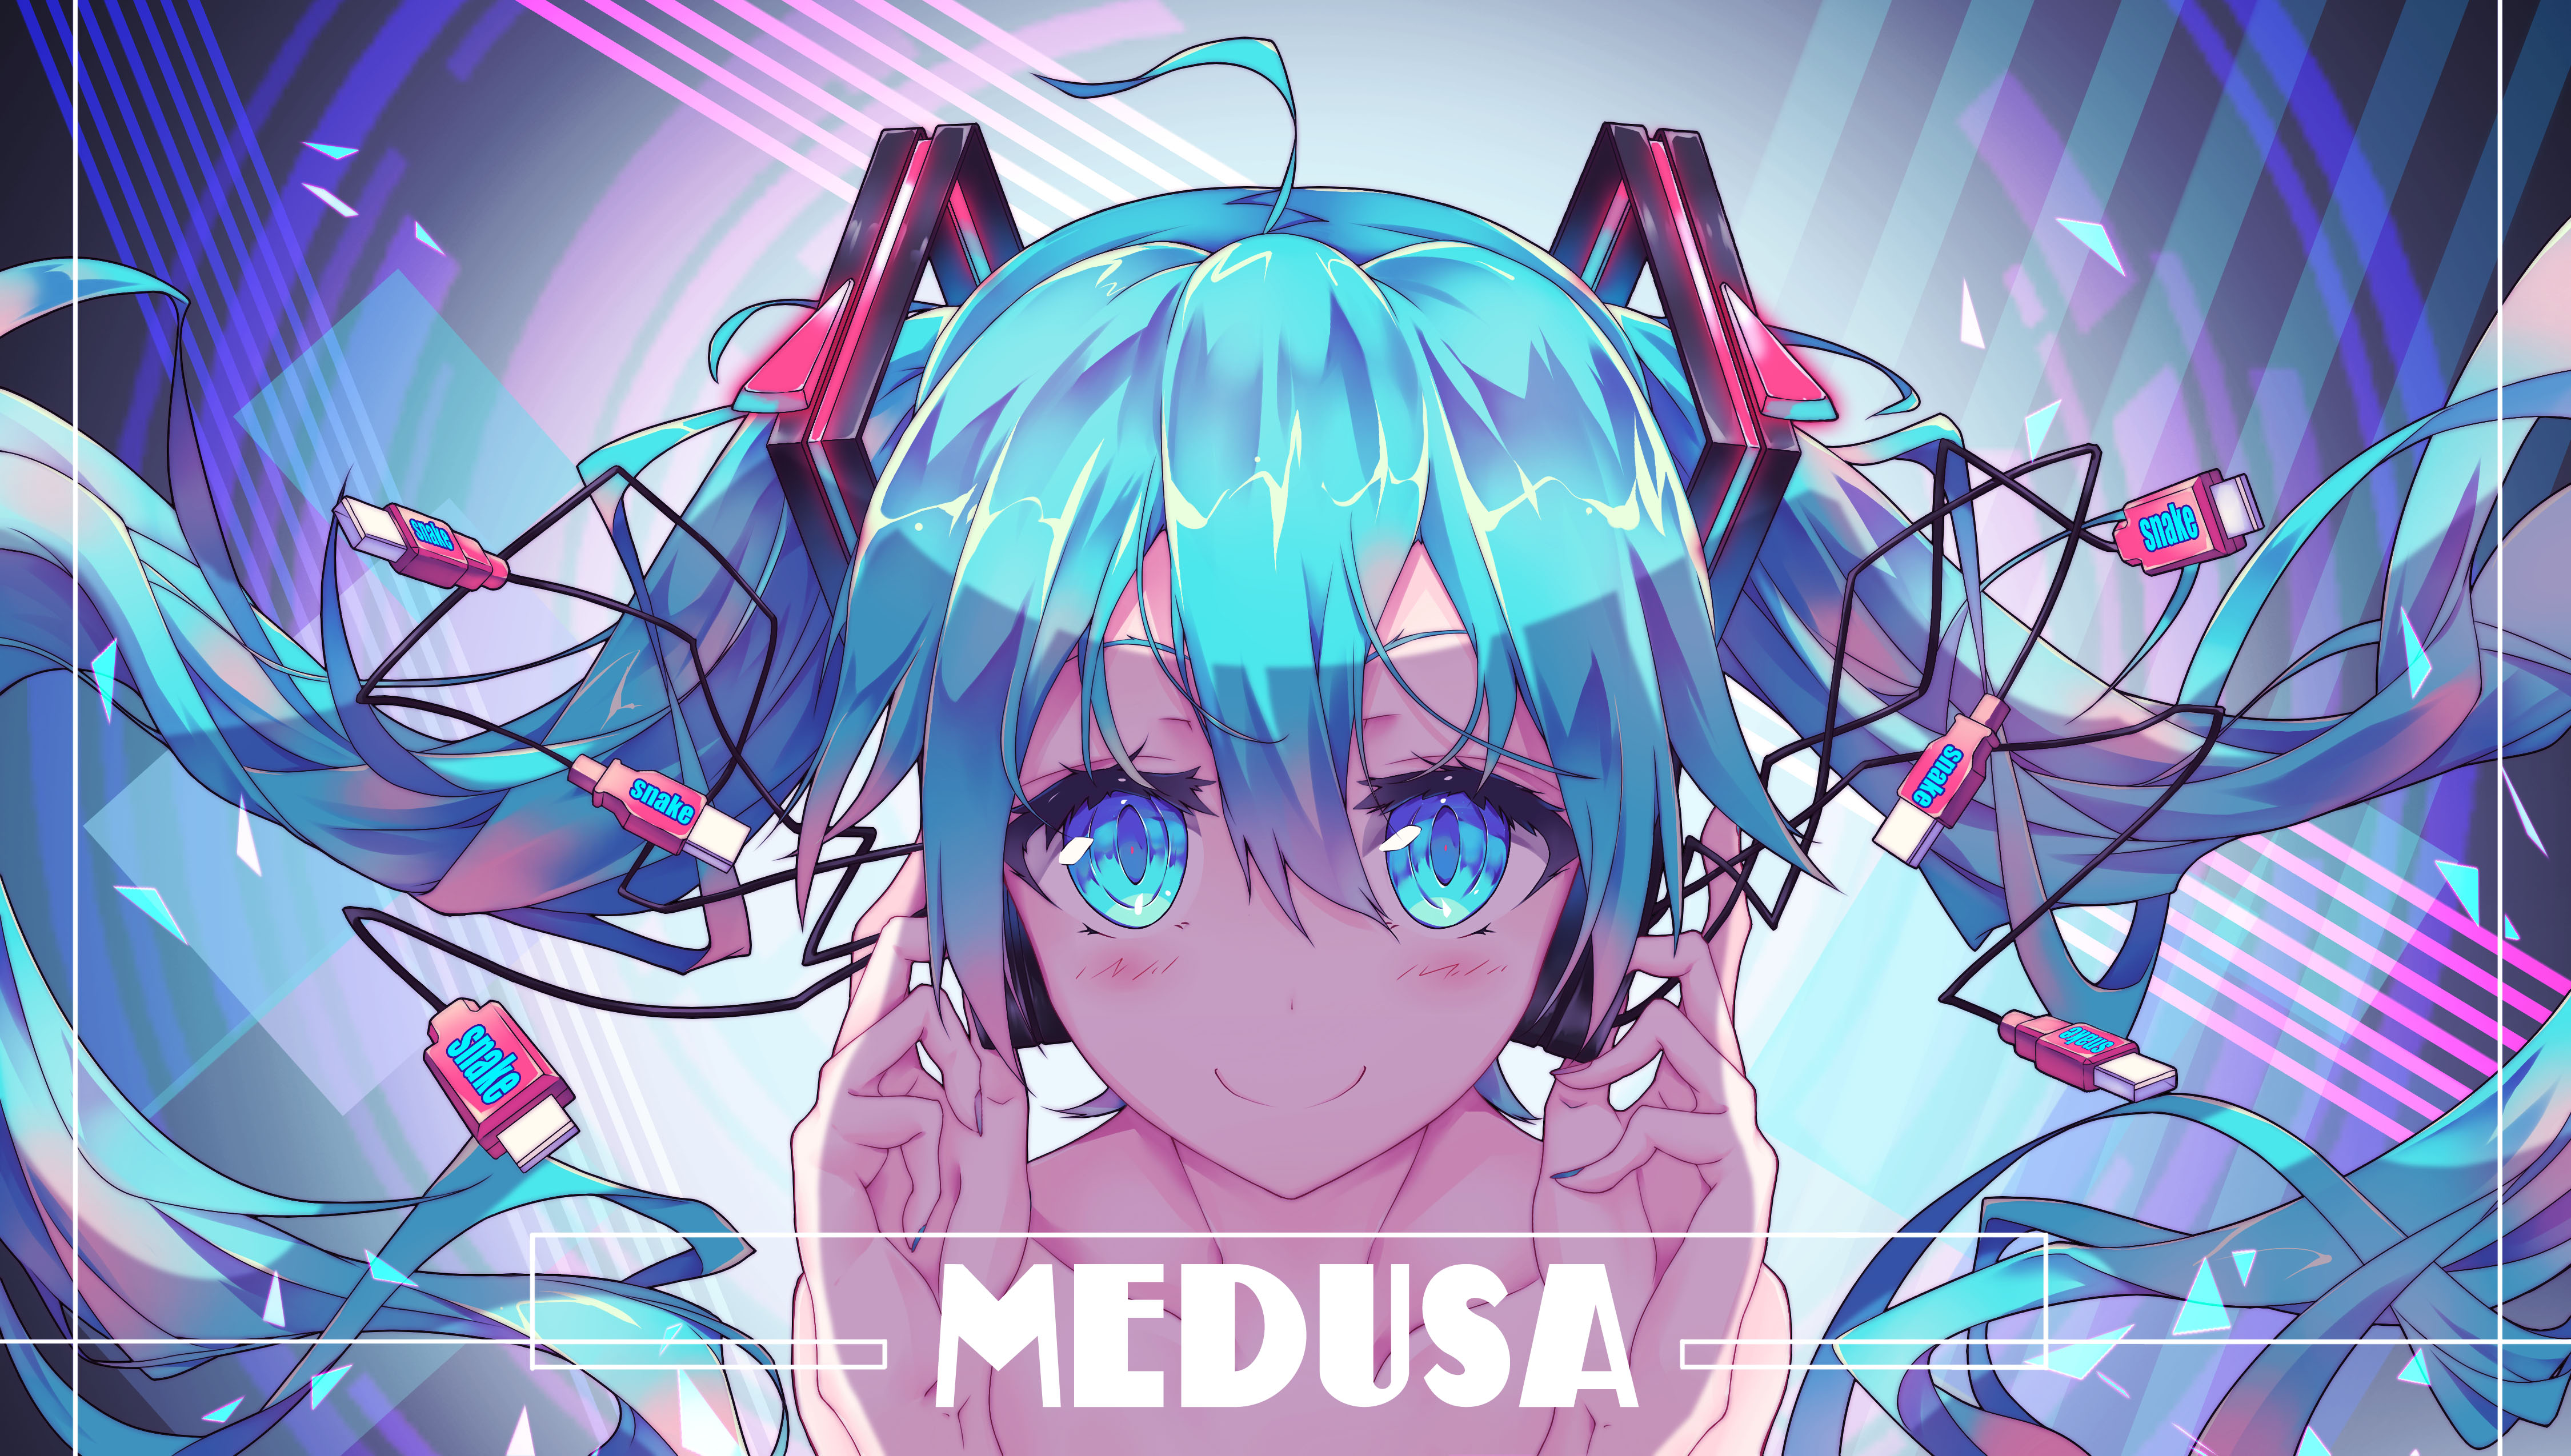 MEDUSA by litsvn